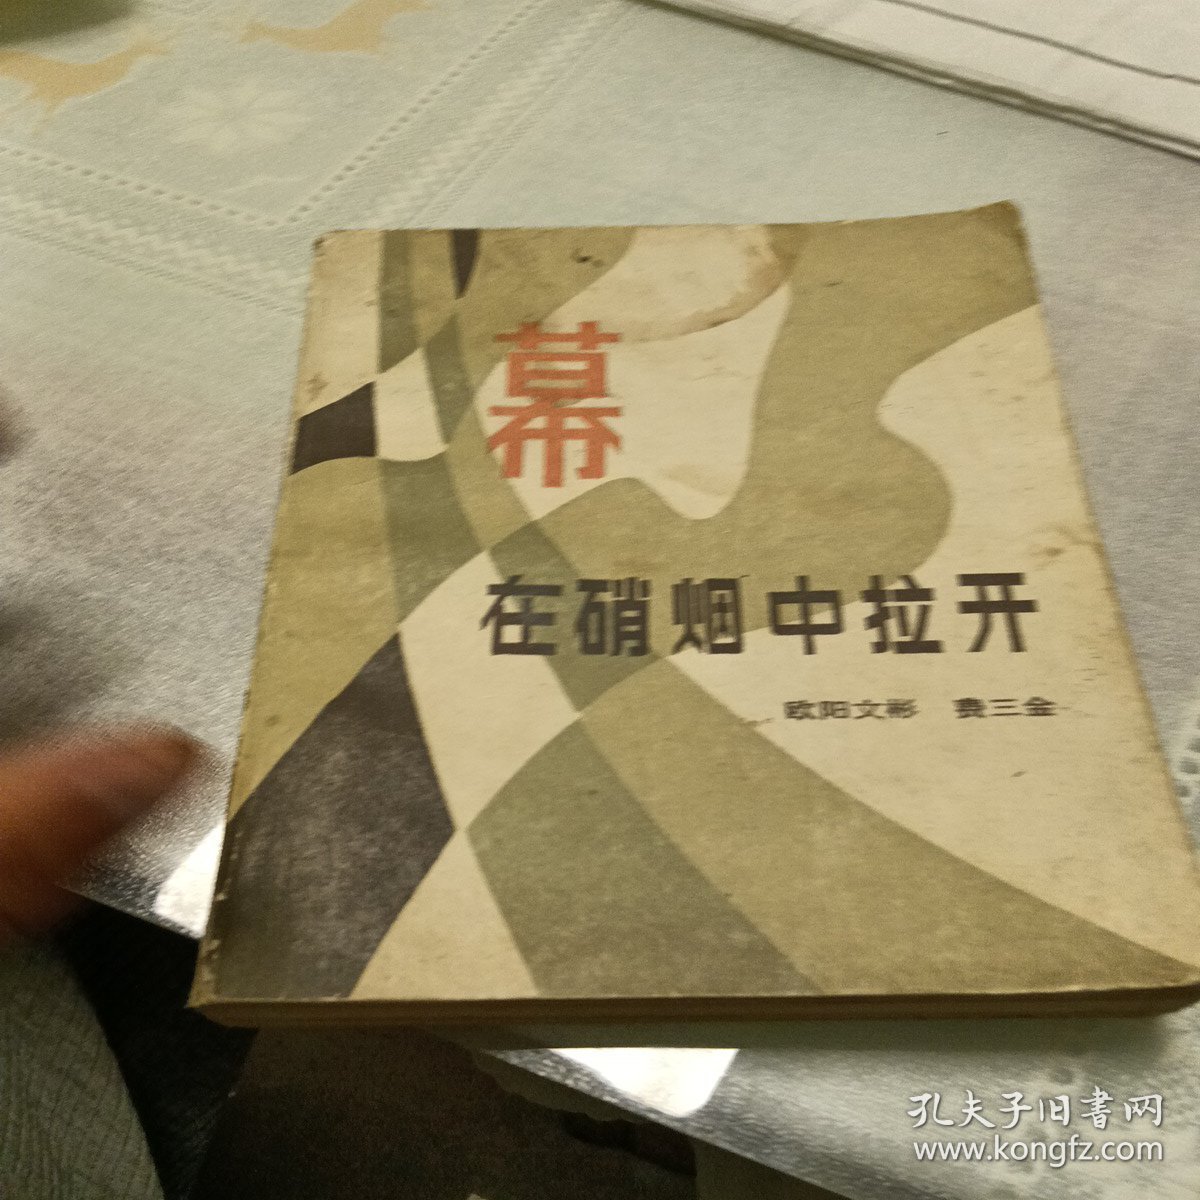 幕在硝烟中拉开，有折痕，有污垢，1984年一版一印，北京，看图免争义。